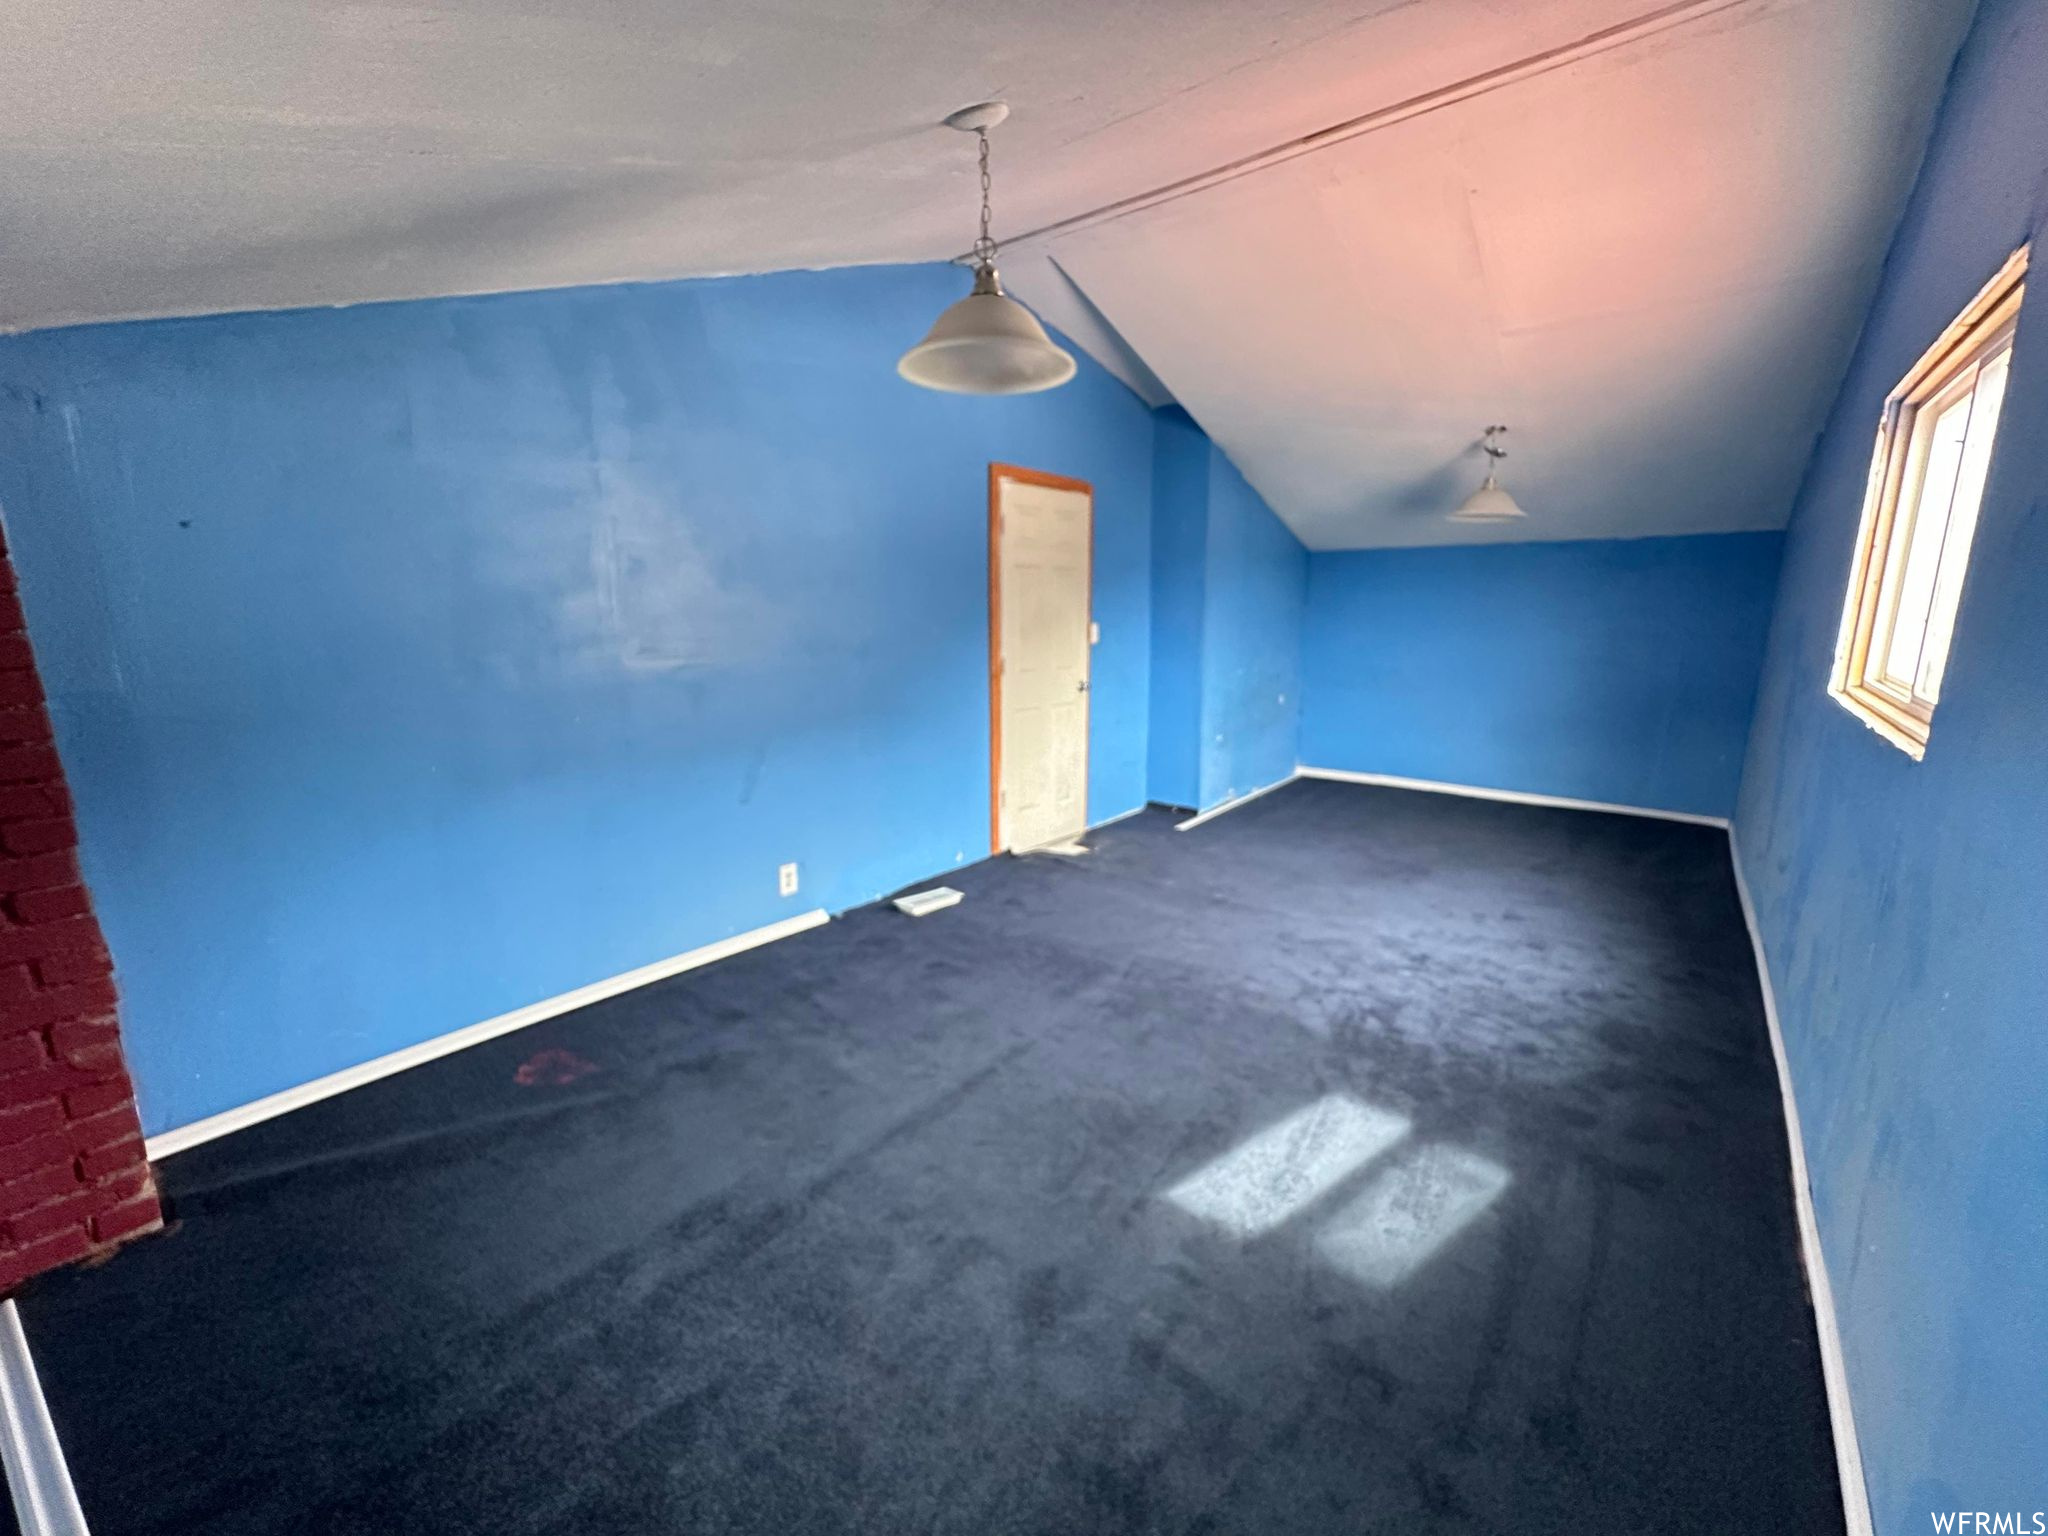 Bonus room featuring dark carpet and vaulted ceiling